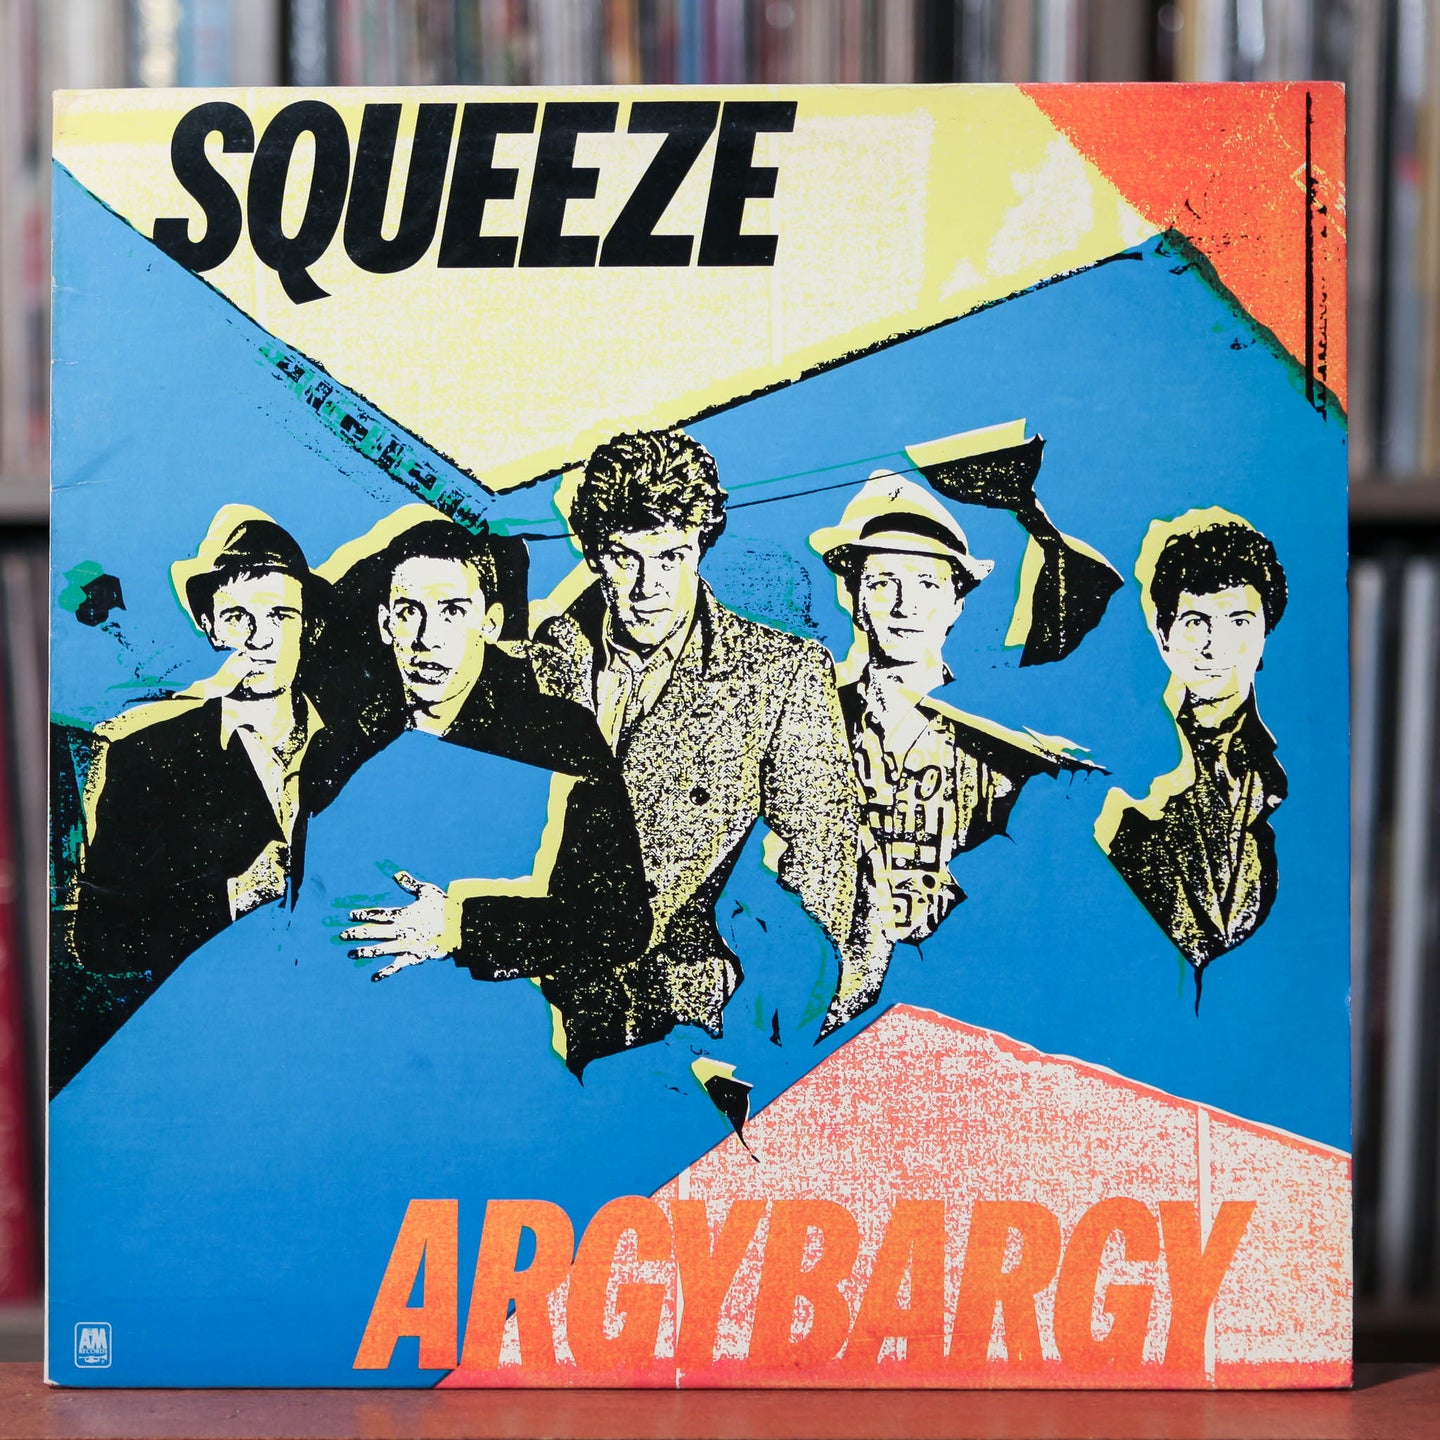 Squeeze - Argybargy - 1980 A&M, VG+/VG